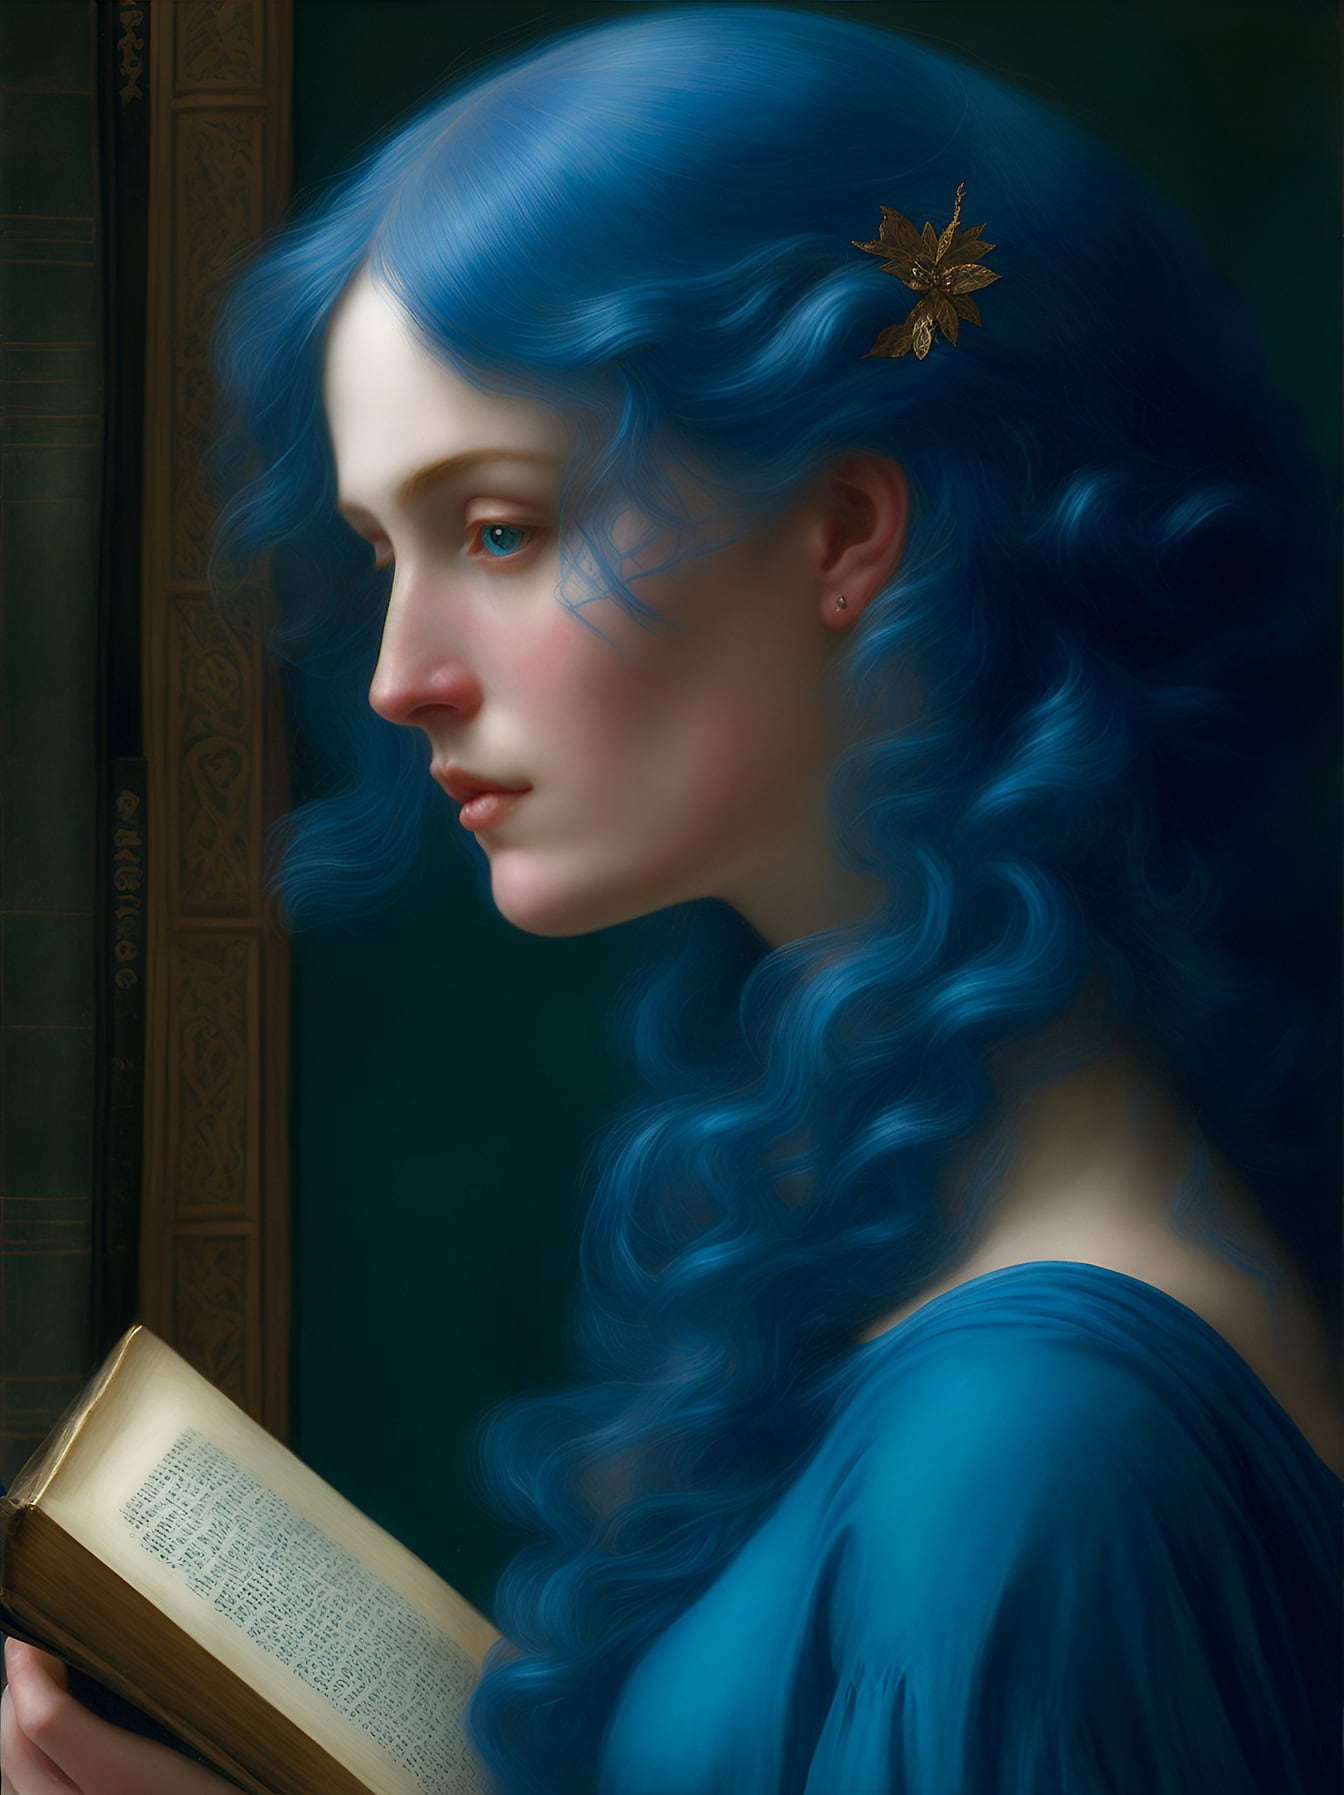 Pre – Chân dung người phụ nữ tưởng tượng Raphaelite với kiểu tóc màu xanh đậm